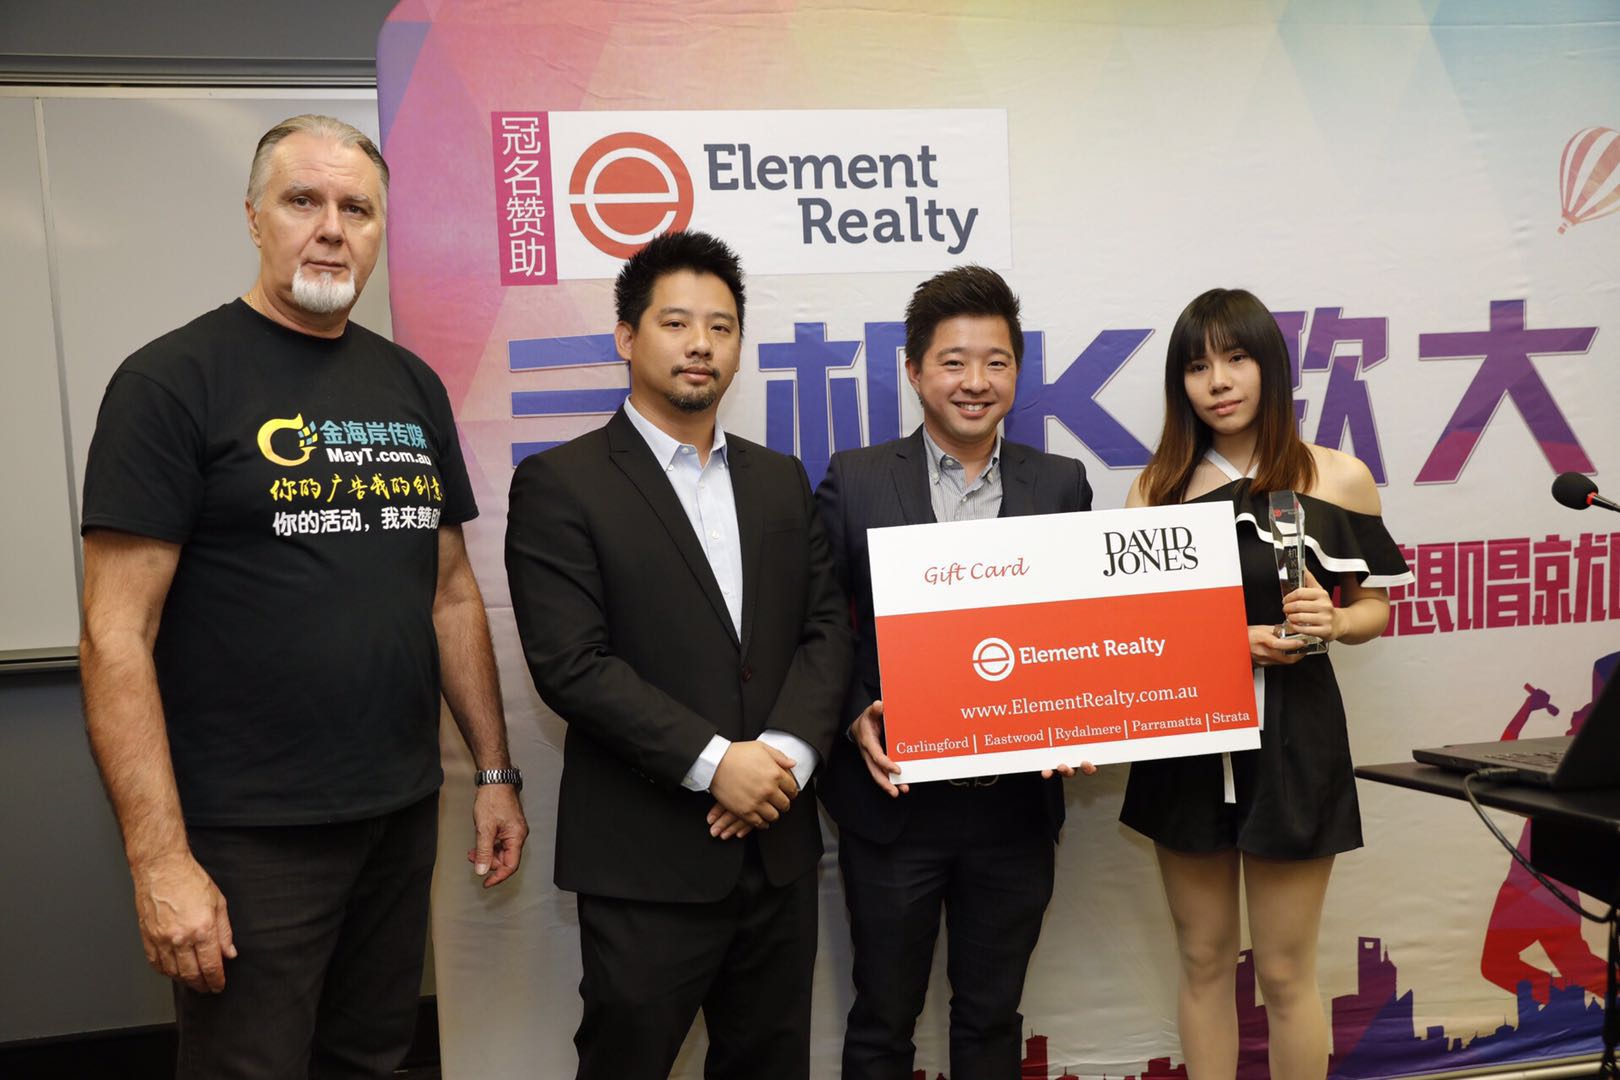 1新闻图 冠军 Element Realty手机K歌大赛颁奖典礼在悉尼举行